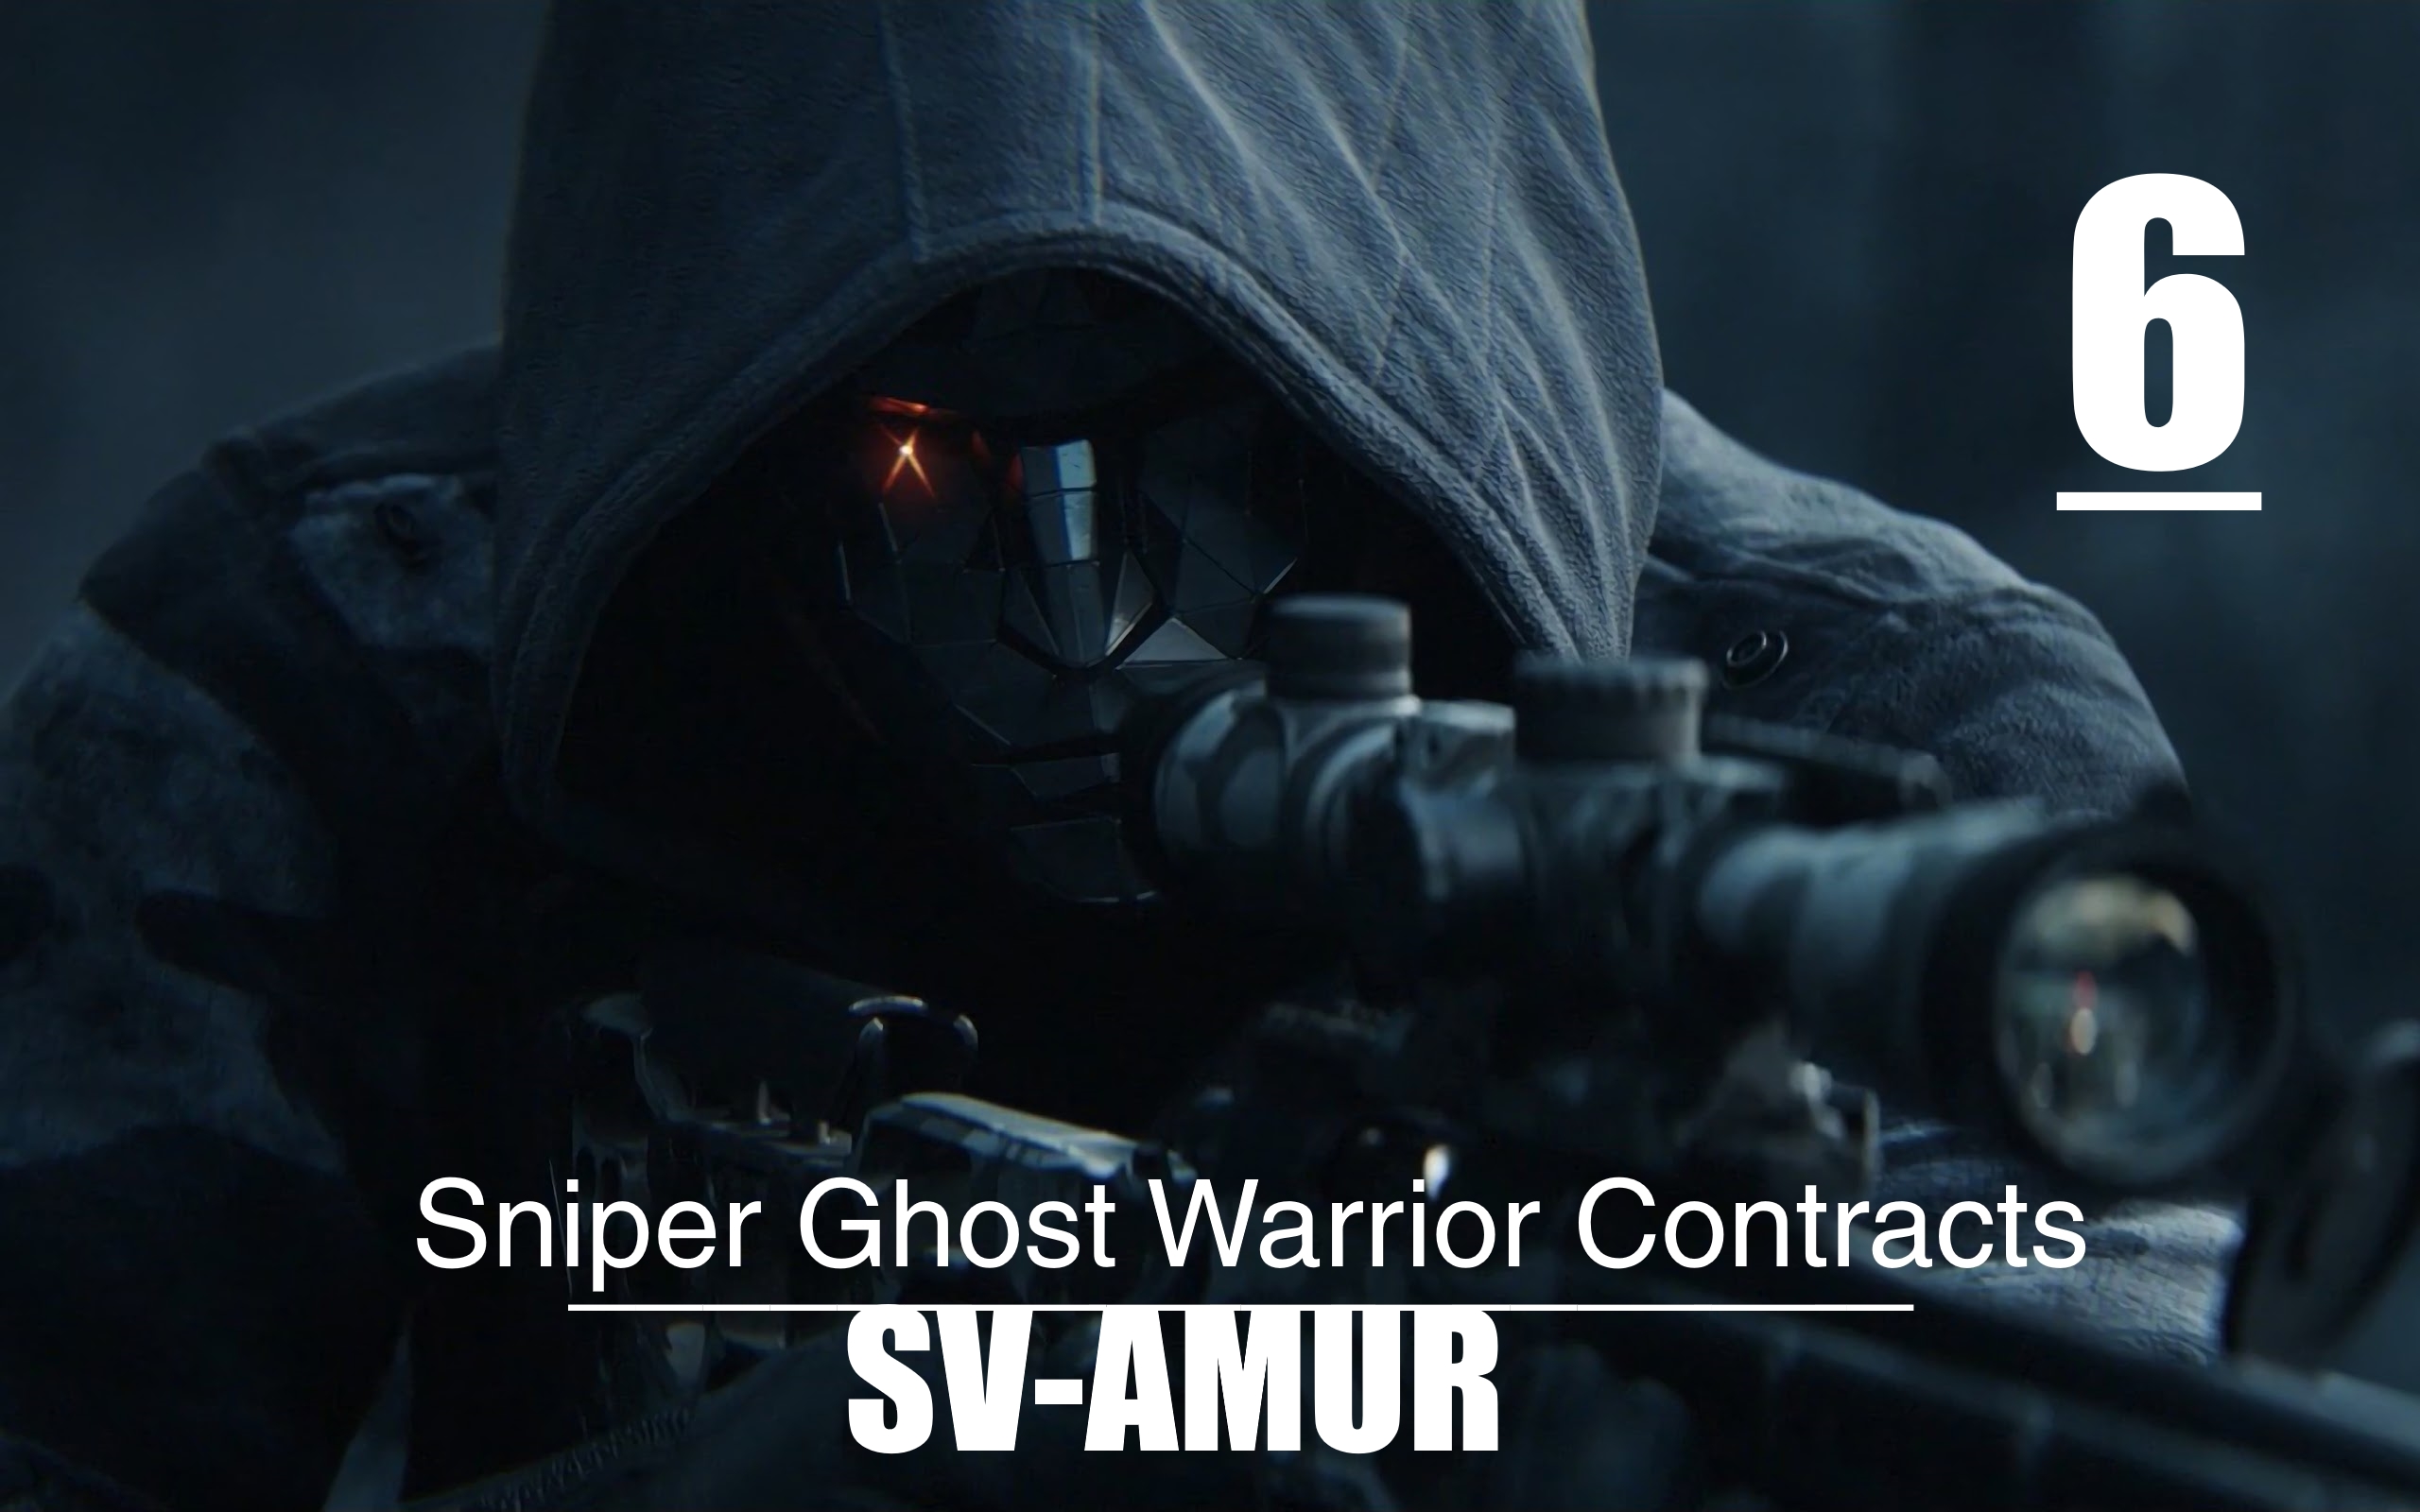 ▄︻デ══━一?[Sniper Ghost Warrior Contracts] Заказ на Варшавского и его Снайпера #6